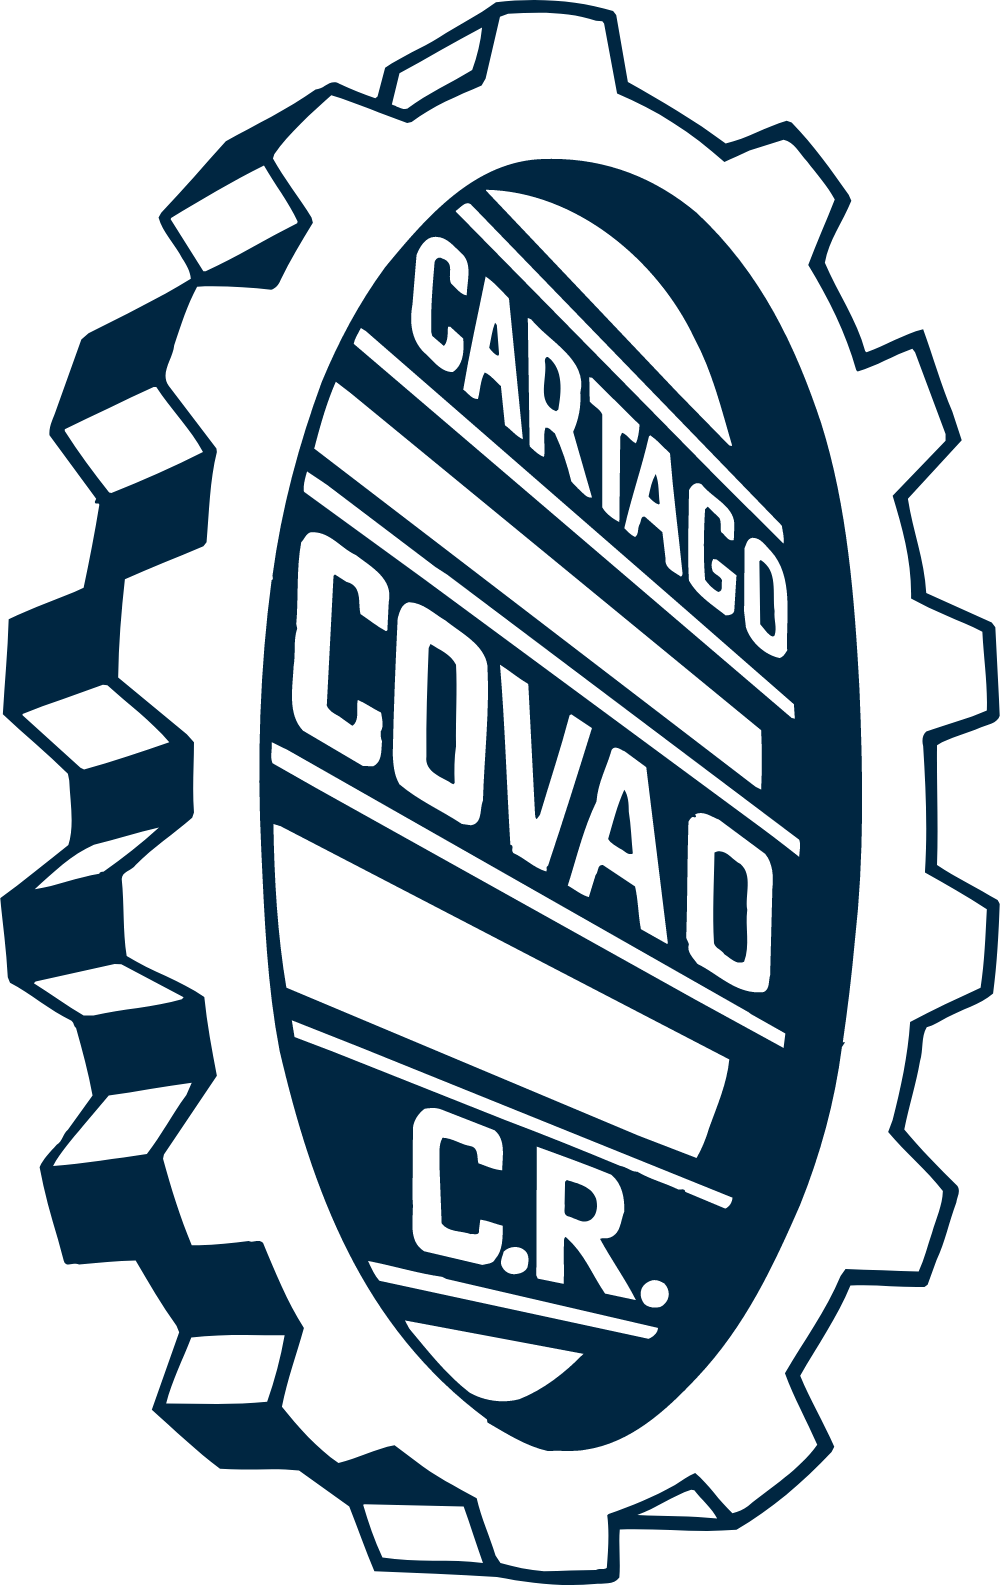 COVAO Logo Logos